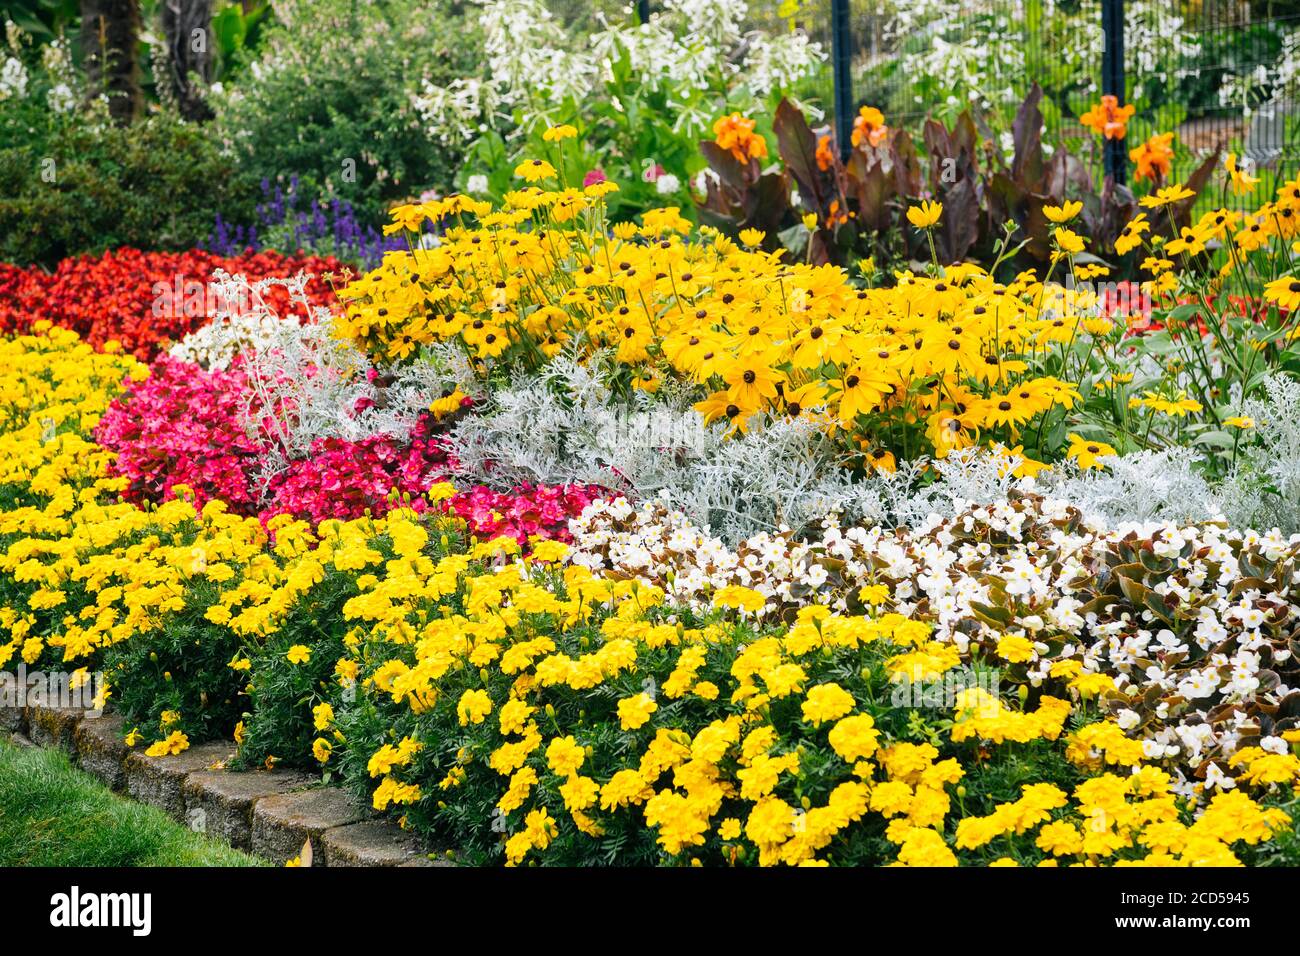 Fiorito con fiori colorati, Rhodendron Garden, Point Defiance Park, Tacoma, Washington state, USA Foto Stock